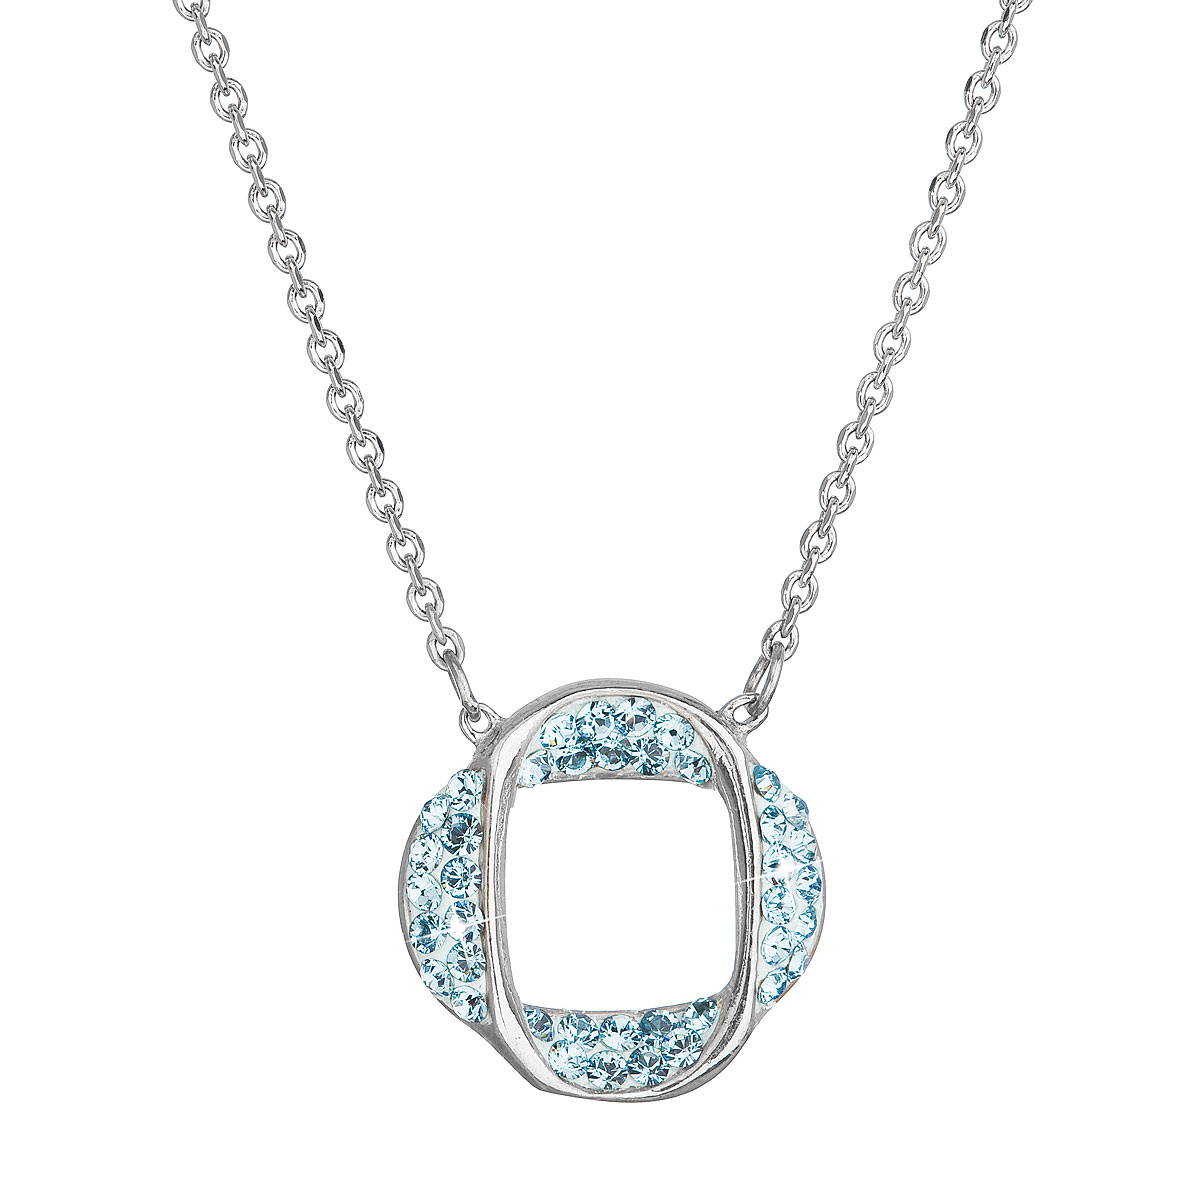 Strieborný náhrdelník s kryštálmi Swarovski modrý 32016.3 aqua